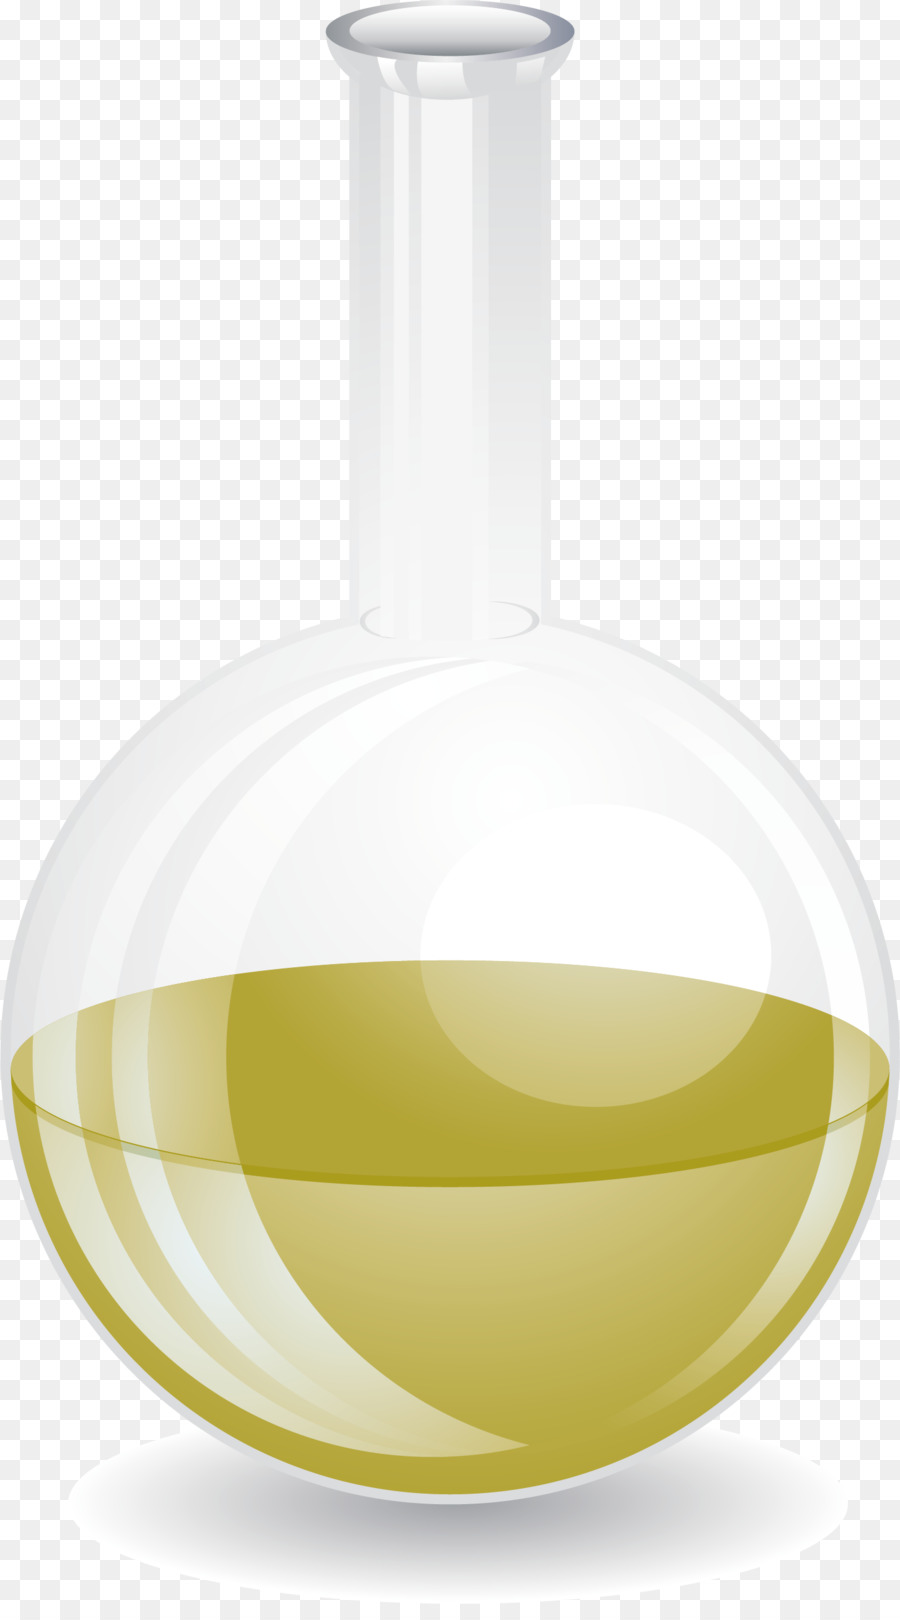 Medicine Bottle Biomedical Sciences - Medicine bottle png download - 1452*2587 - Free Transparent Medicine png Download.